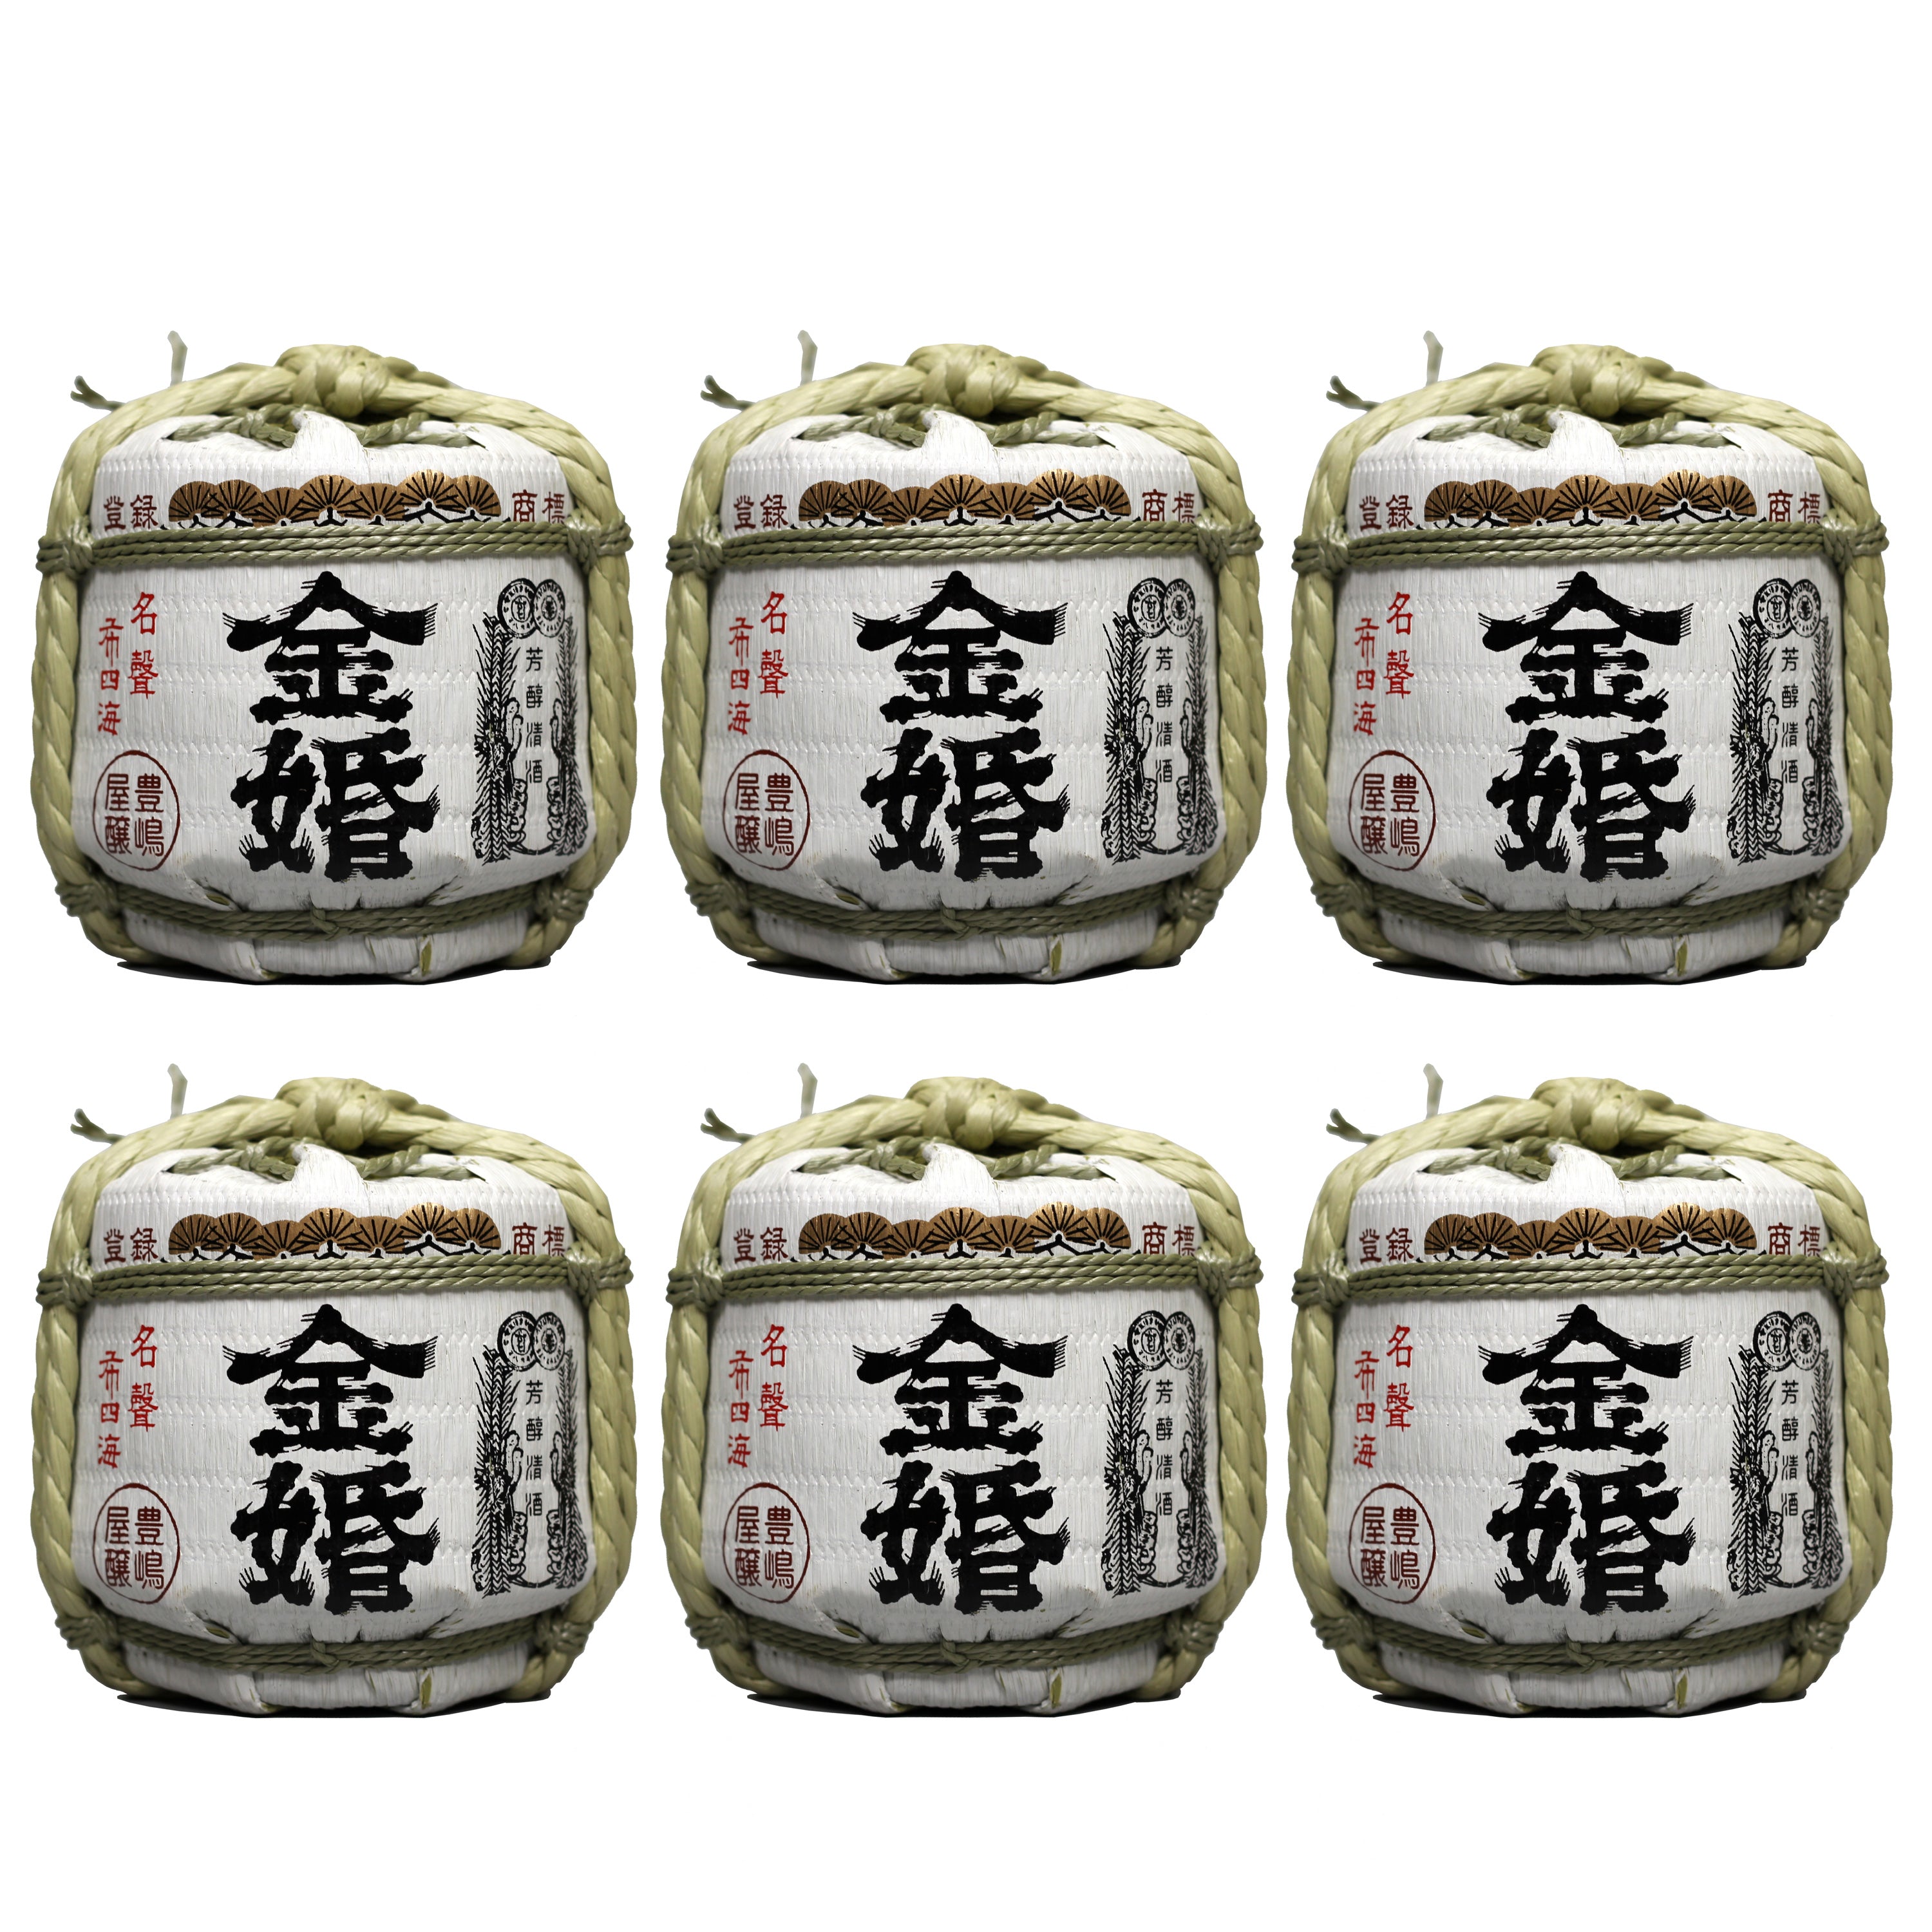 Kinkon barrel Josen (300ml) x 6 Bottle Pack